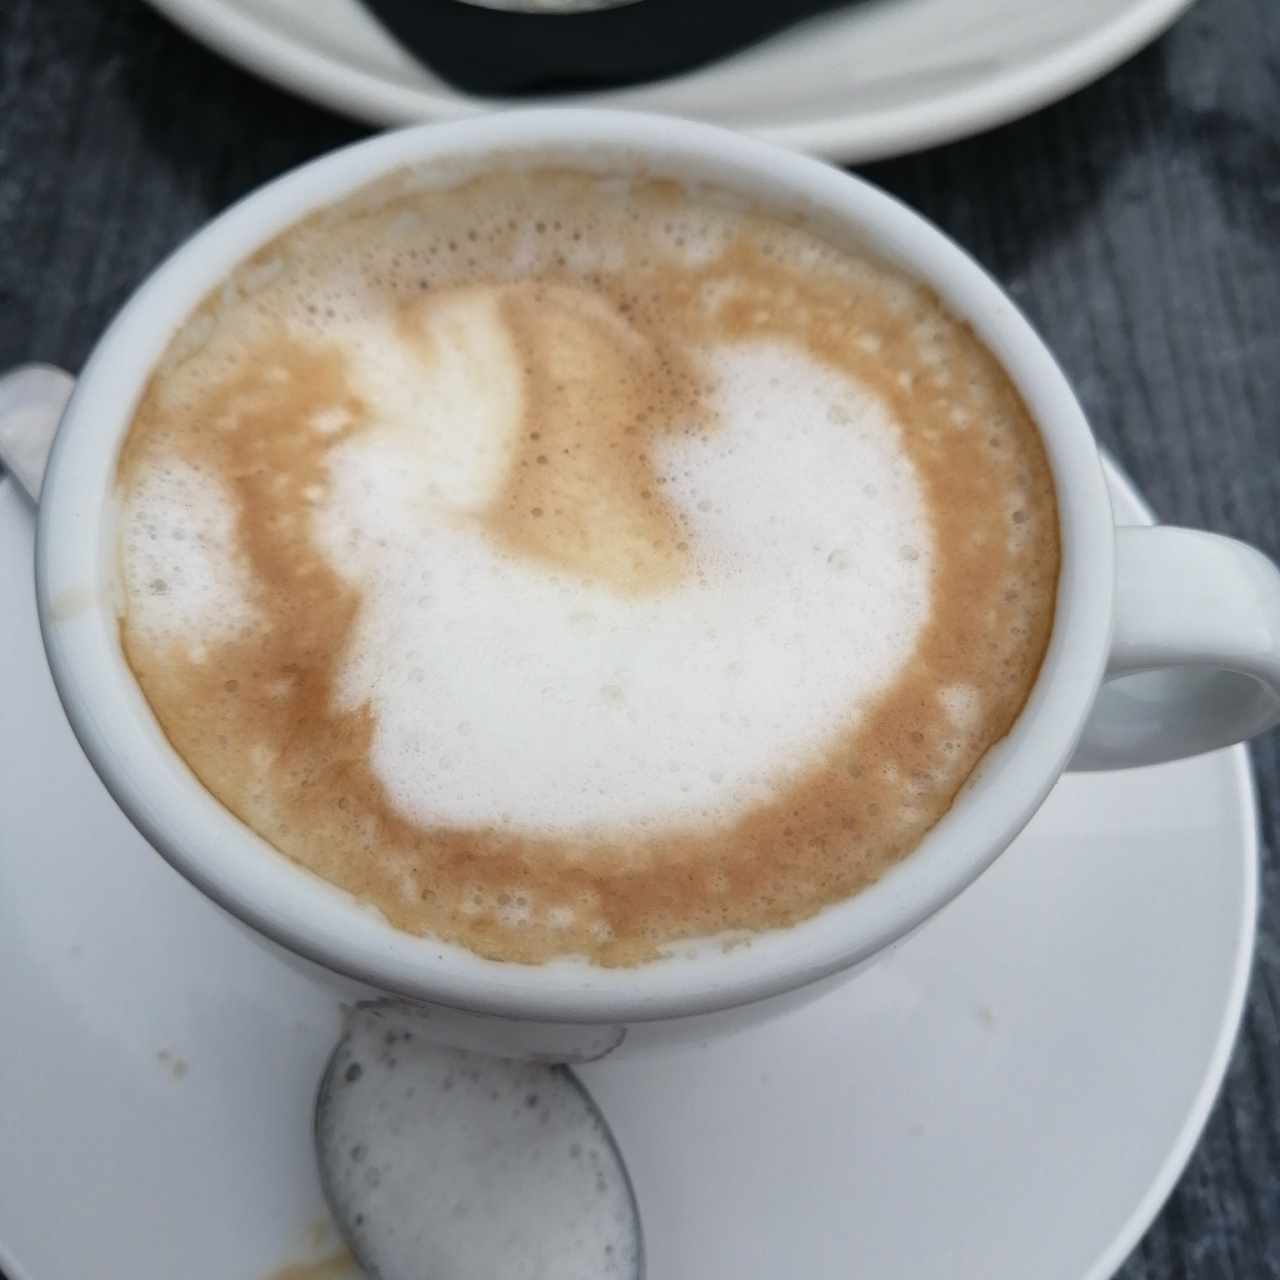 Café latte